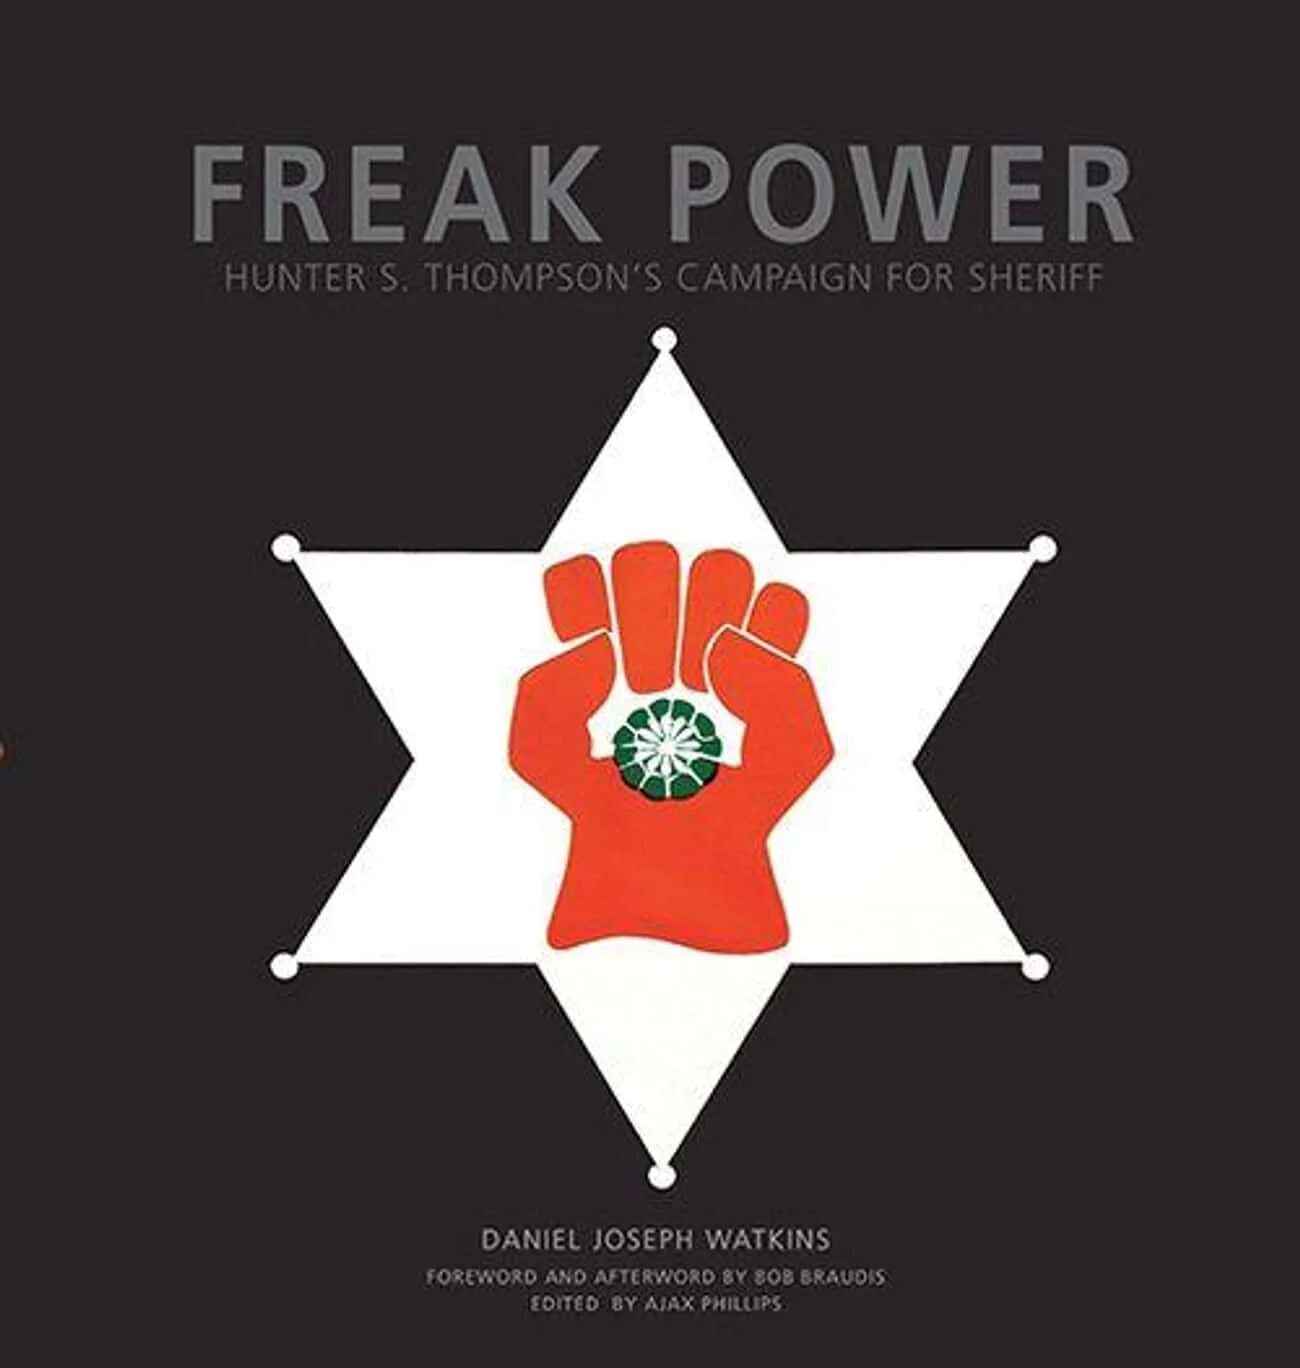 Freak Power. Freak Power Hunter. Freak Power Hunter Thompson logo.